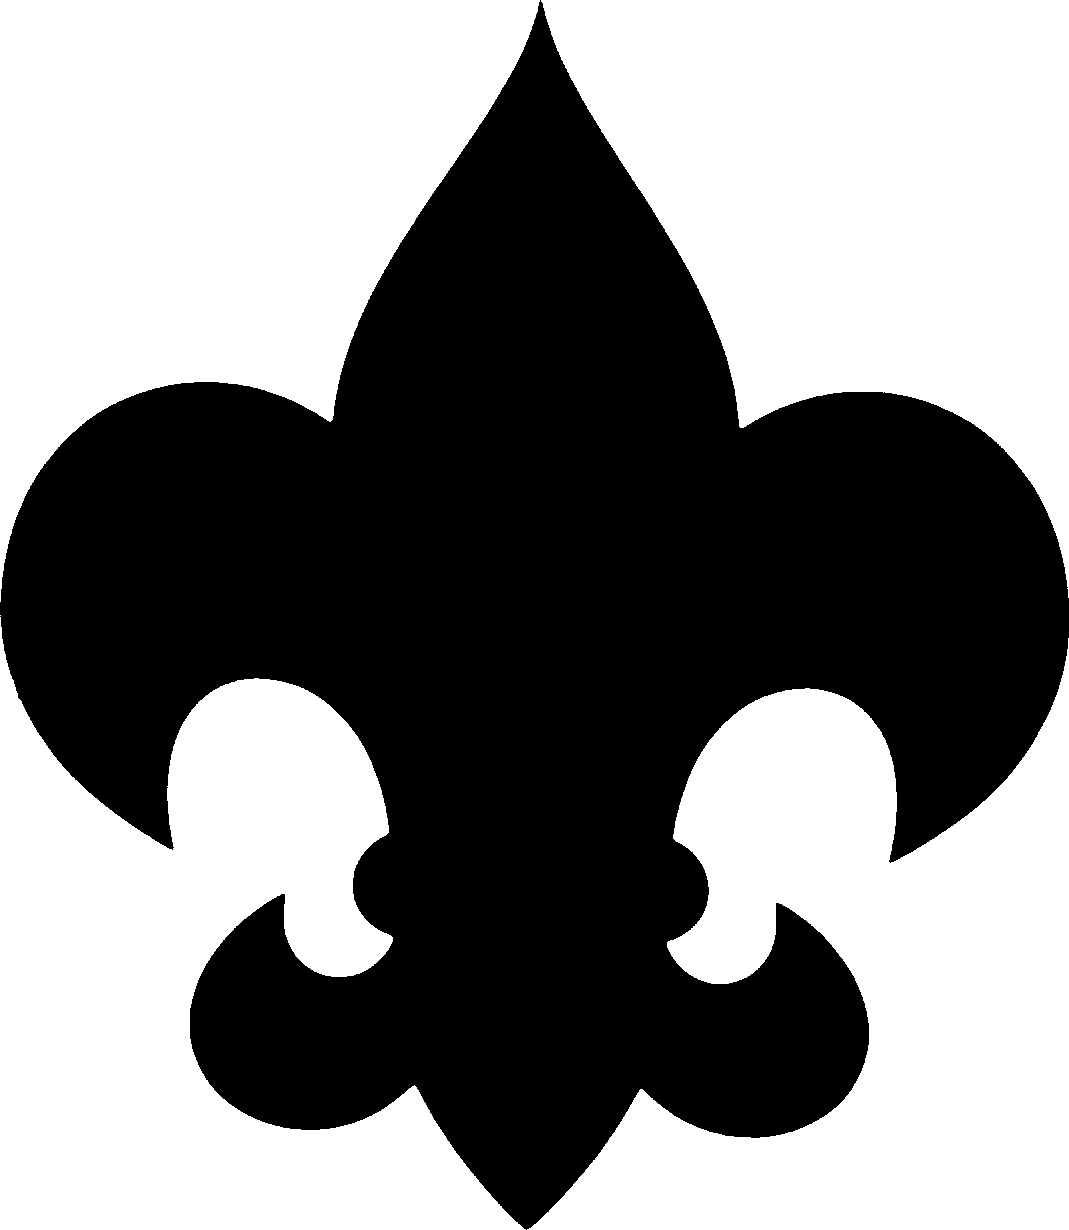 Boy scout symbol clipart 2